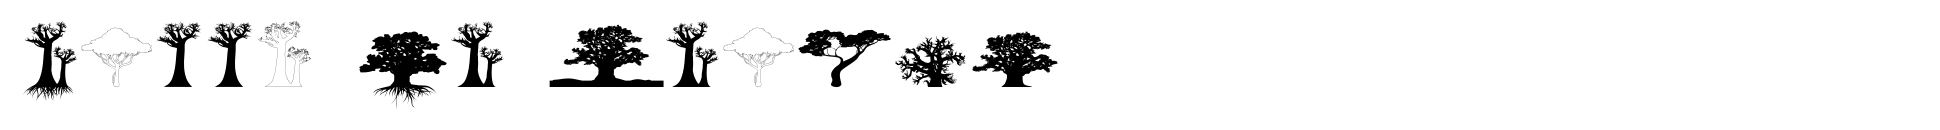 Bäume von Afrika